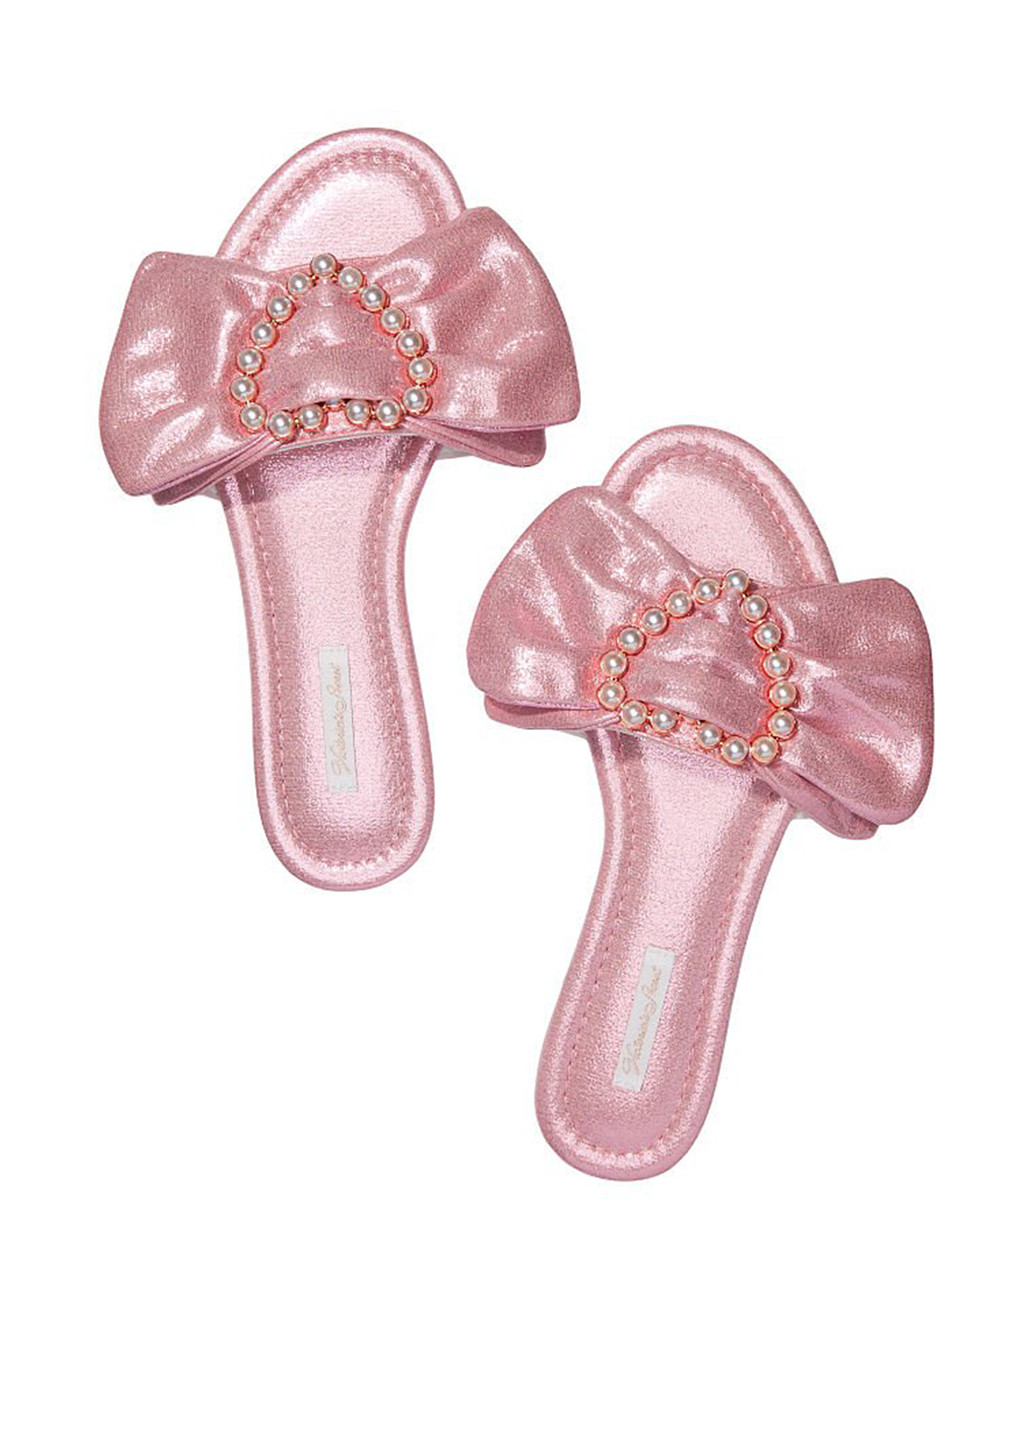 Розовые тапочки Victoria's Secret с аппликацией, с бусинами, с бантом